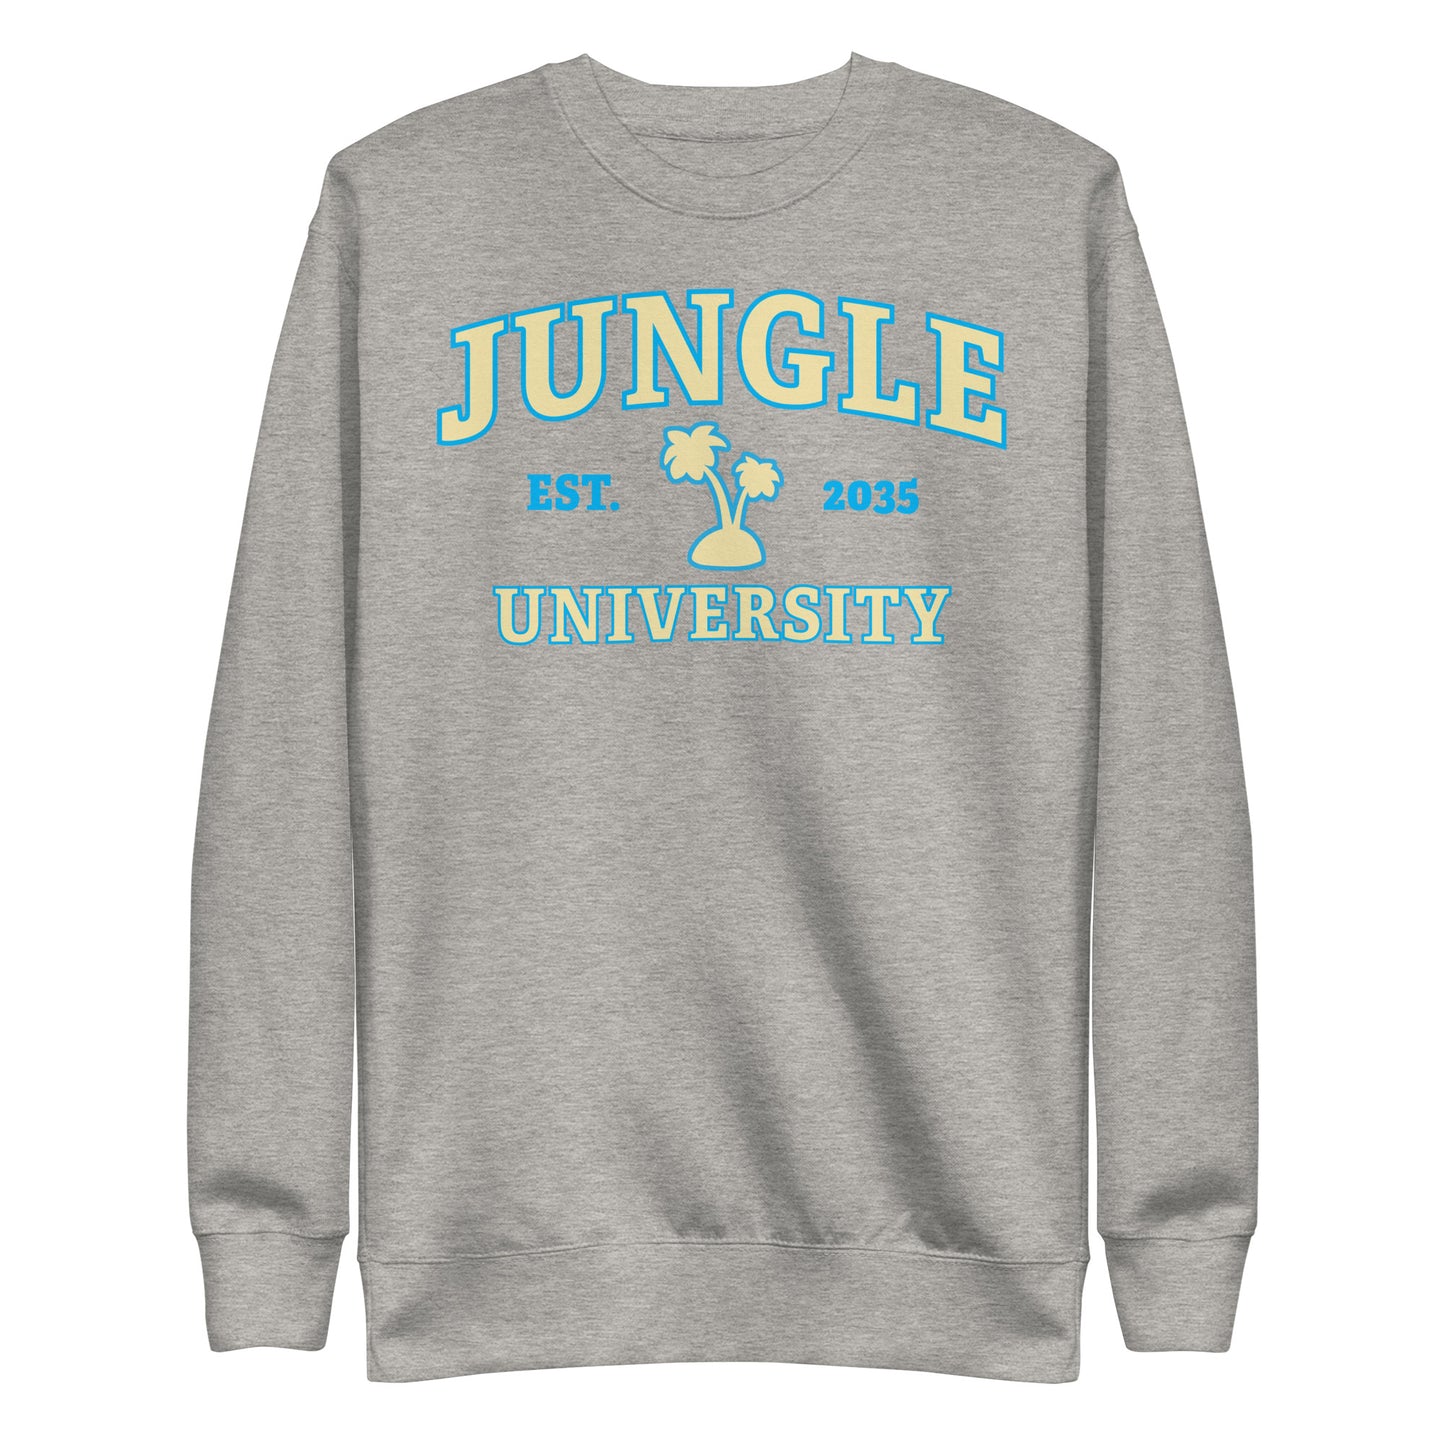 Jungle University Sweat Shirt